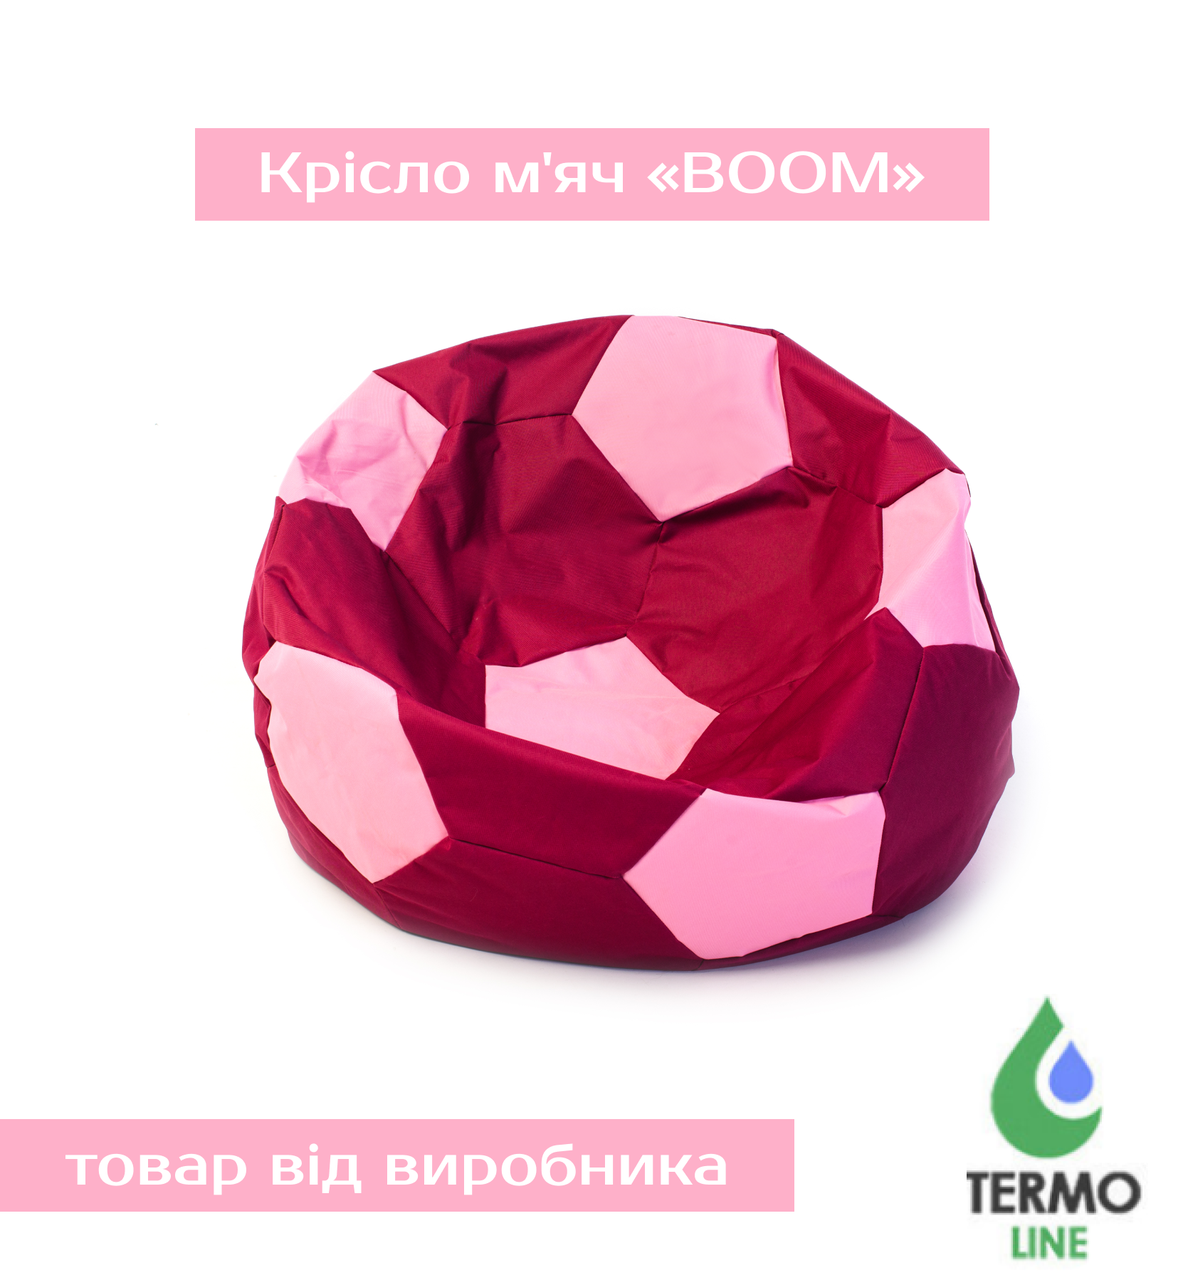 Крісло м'яч «BOOM» 60см бордо-рожевий